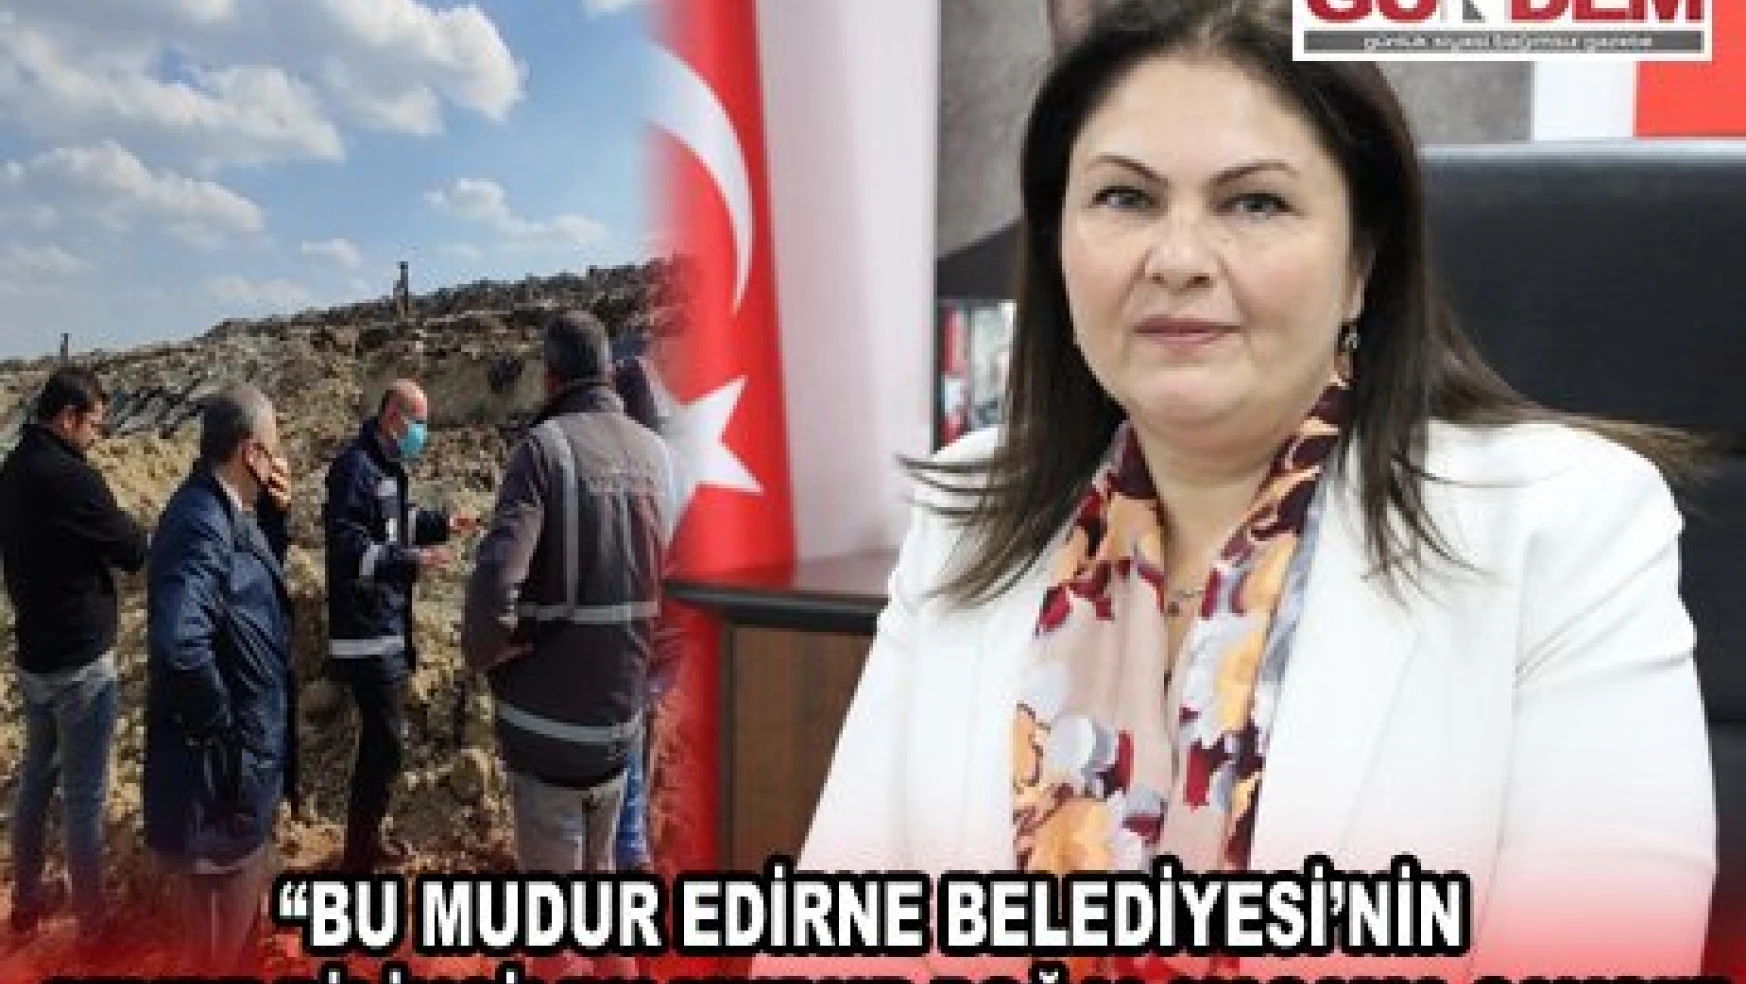 'Bu mudur Edirne Belediyesi'nin çevre bilinci! Bu mudur doğal yaşama saygı!'